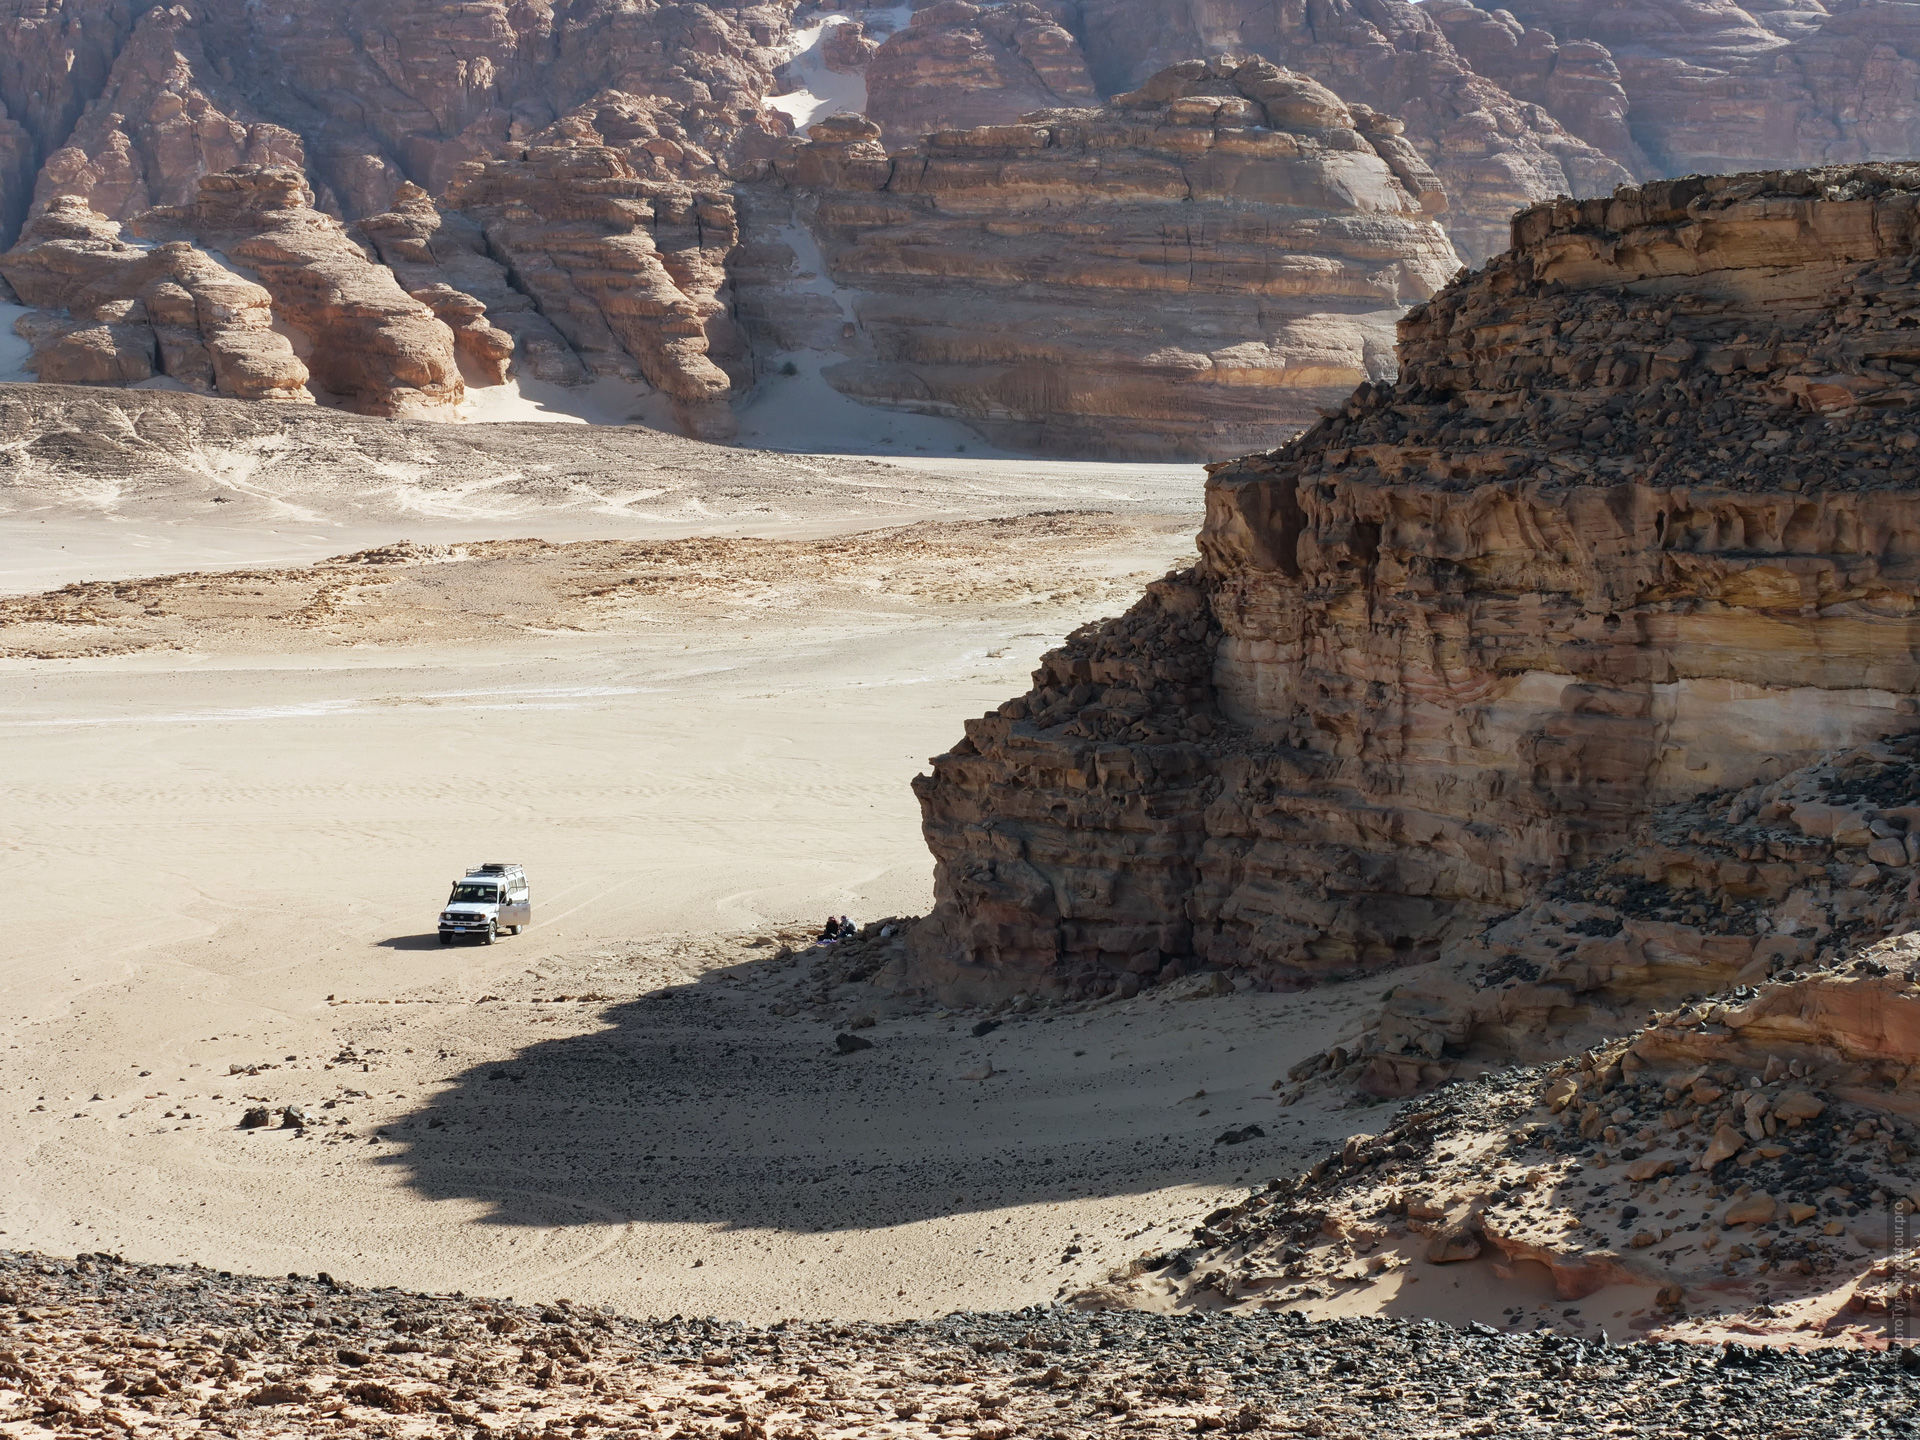 Наш джип во время свободного странствия по пустыне Синая, Дахаб, Египет.